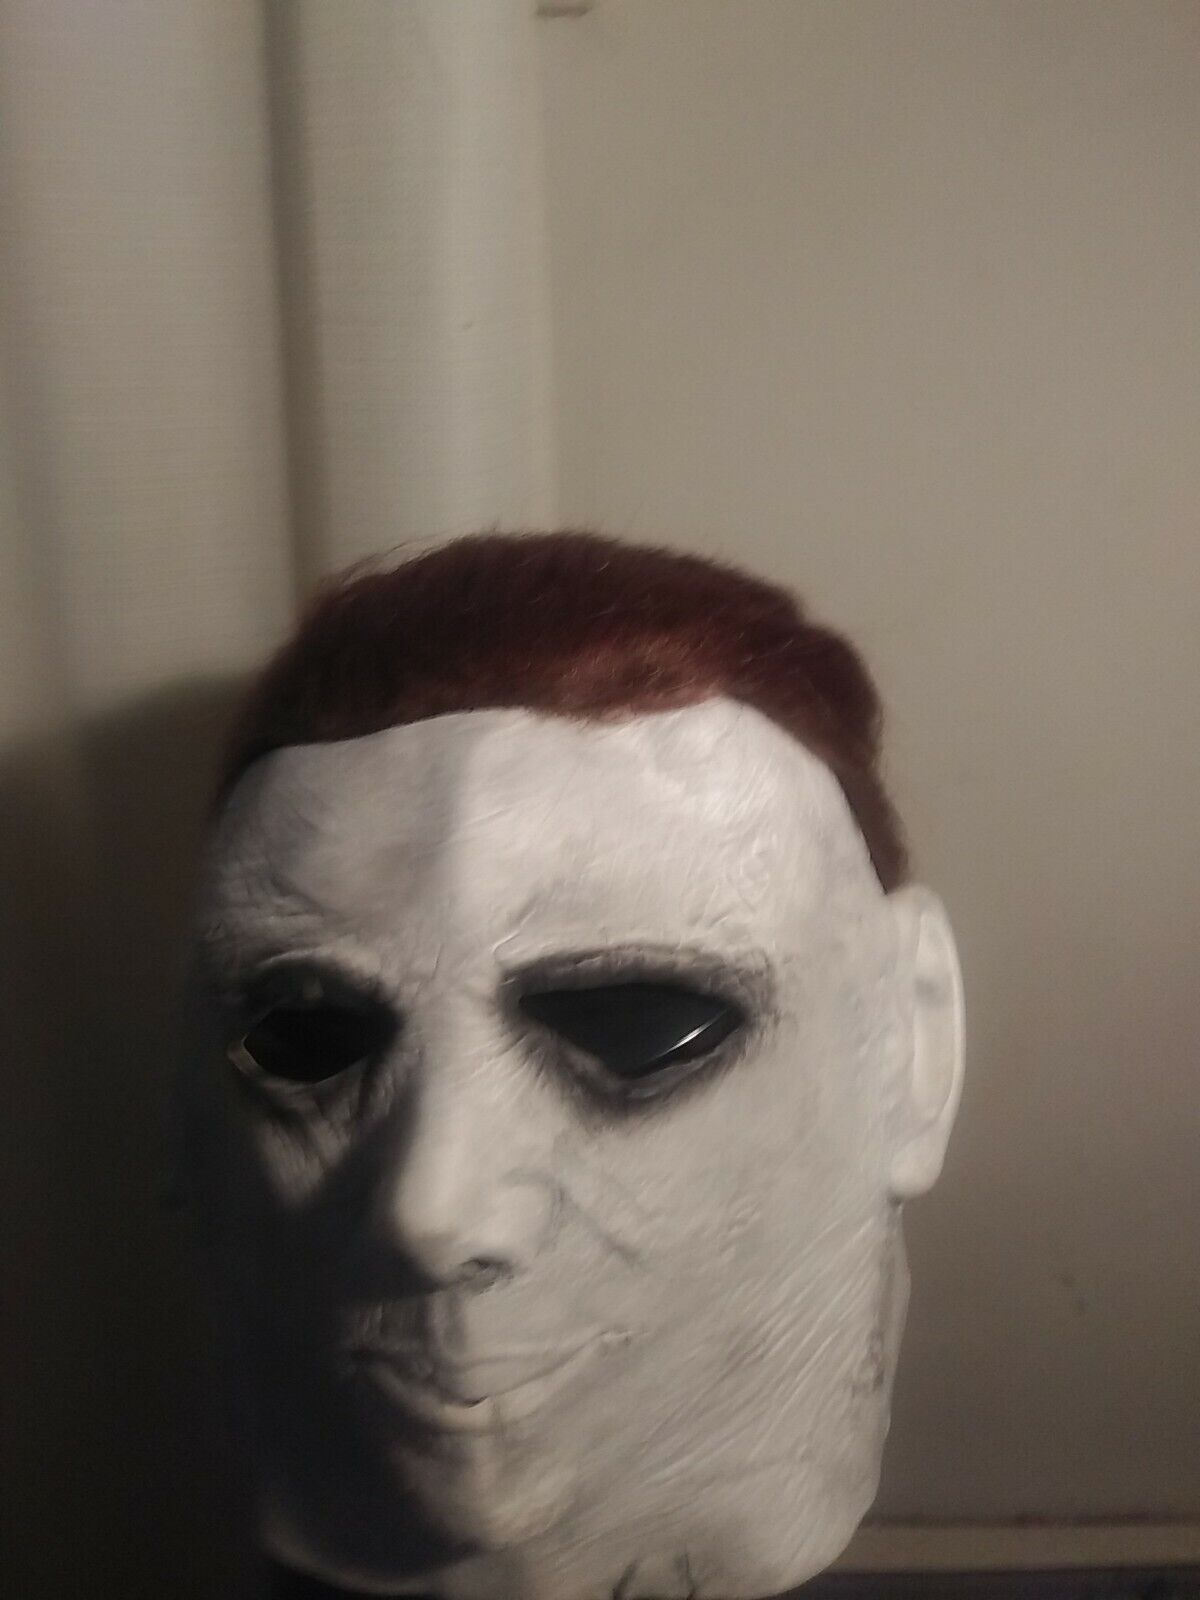 Halloween 2018 Michael Myers mask